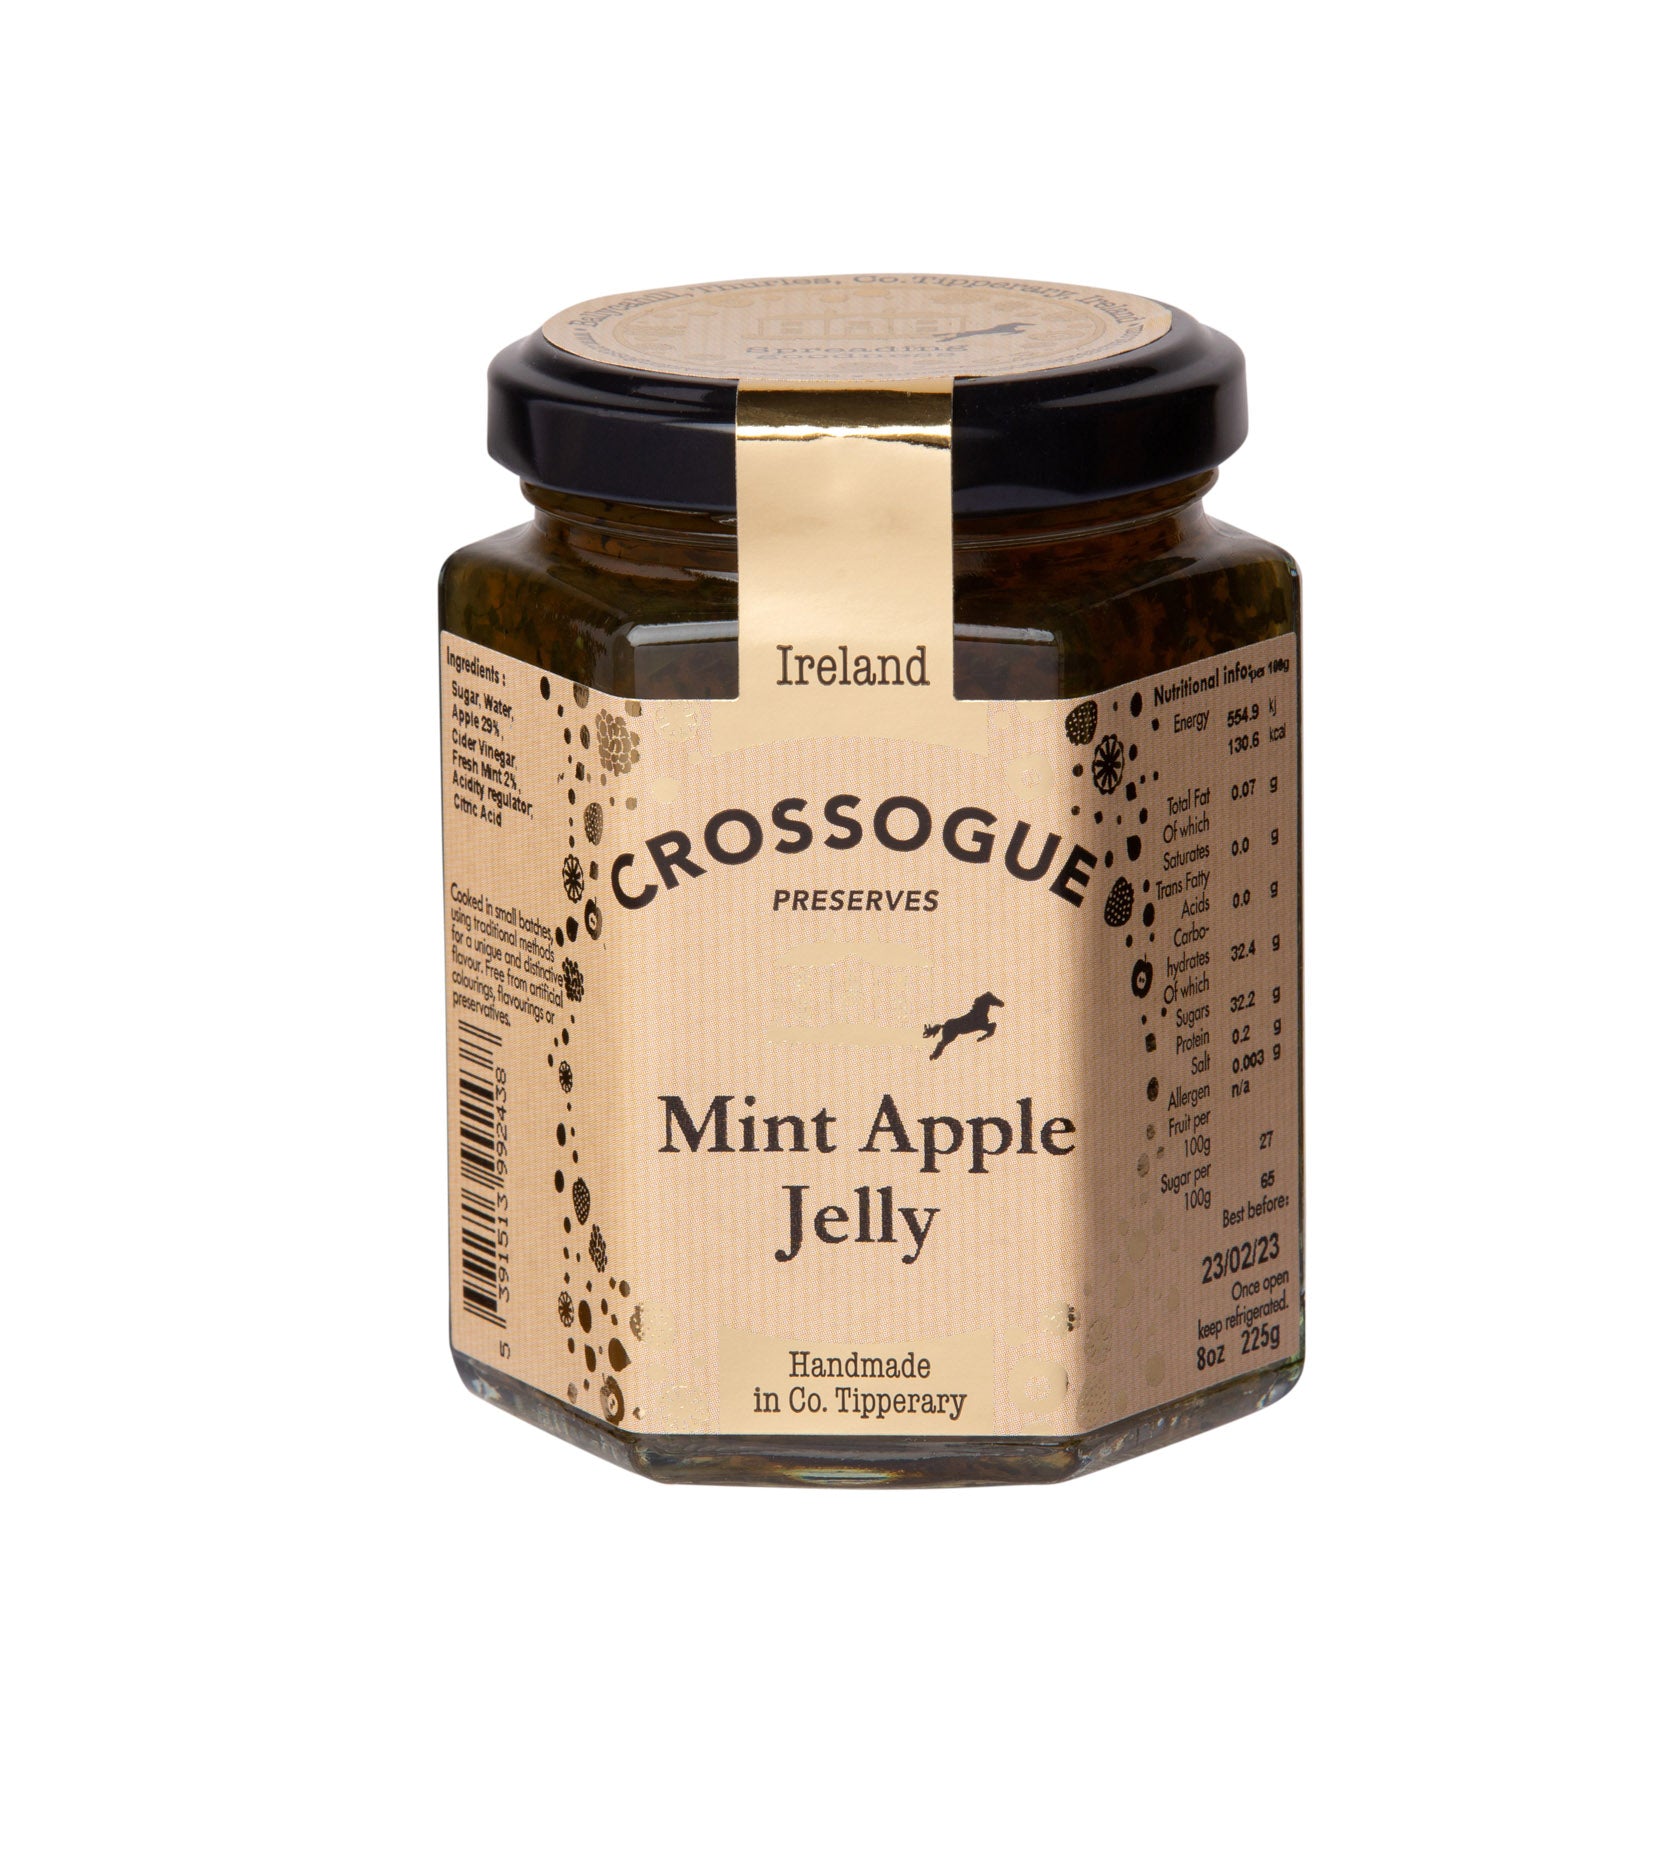 Mint Apple Jelly (Award Winner)